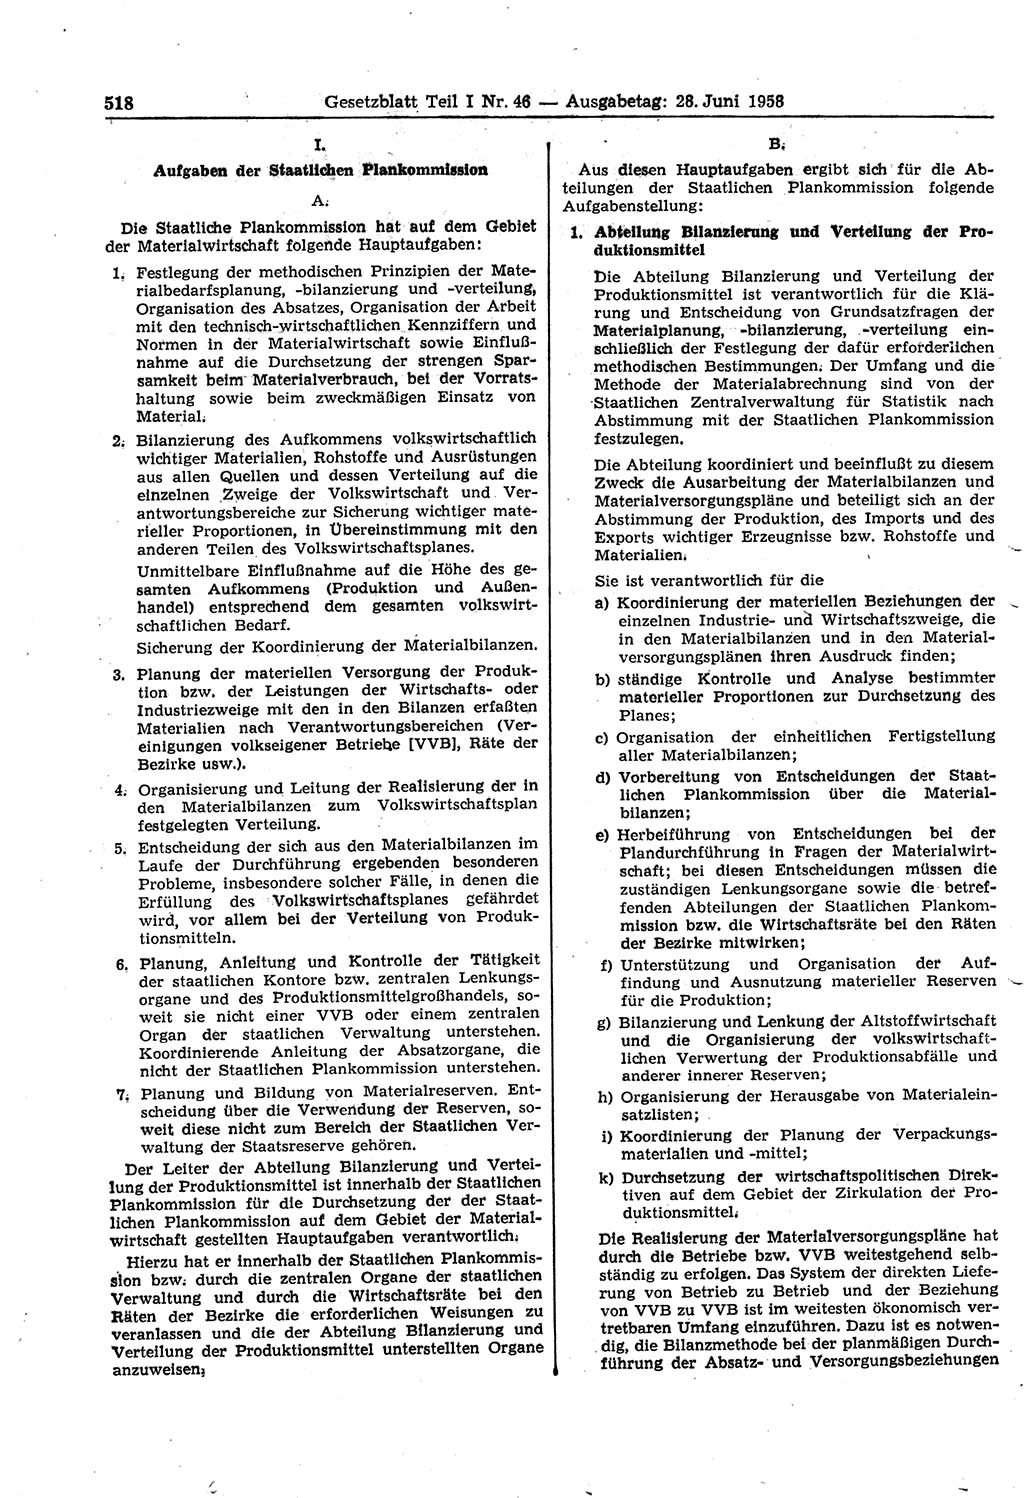 Gesetzblatt (GBl.) der Deutschen Demokratischen Republik (DDR) Teil Ⅰ 1958, Seite 518 (GBl. DDR Ⅰ 1958, S. 518)